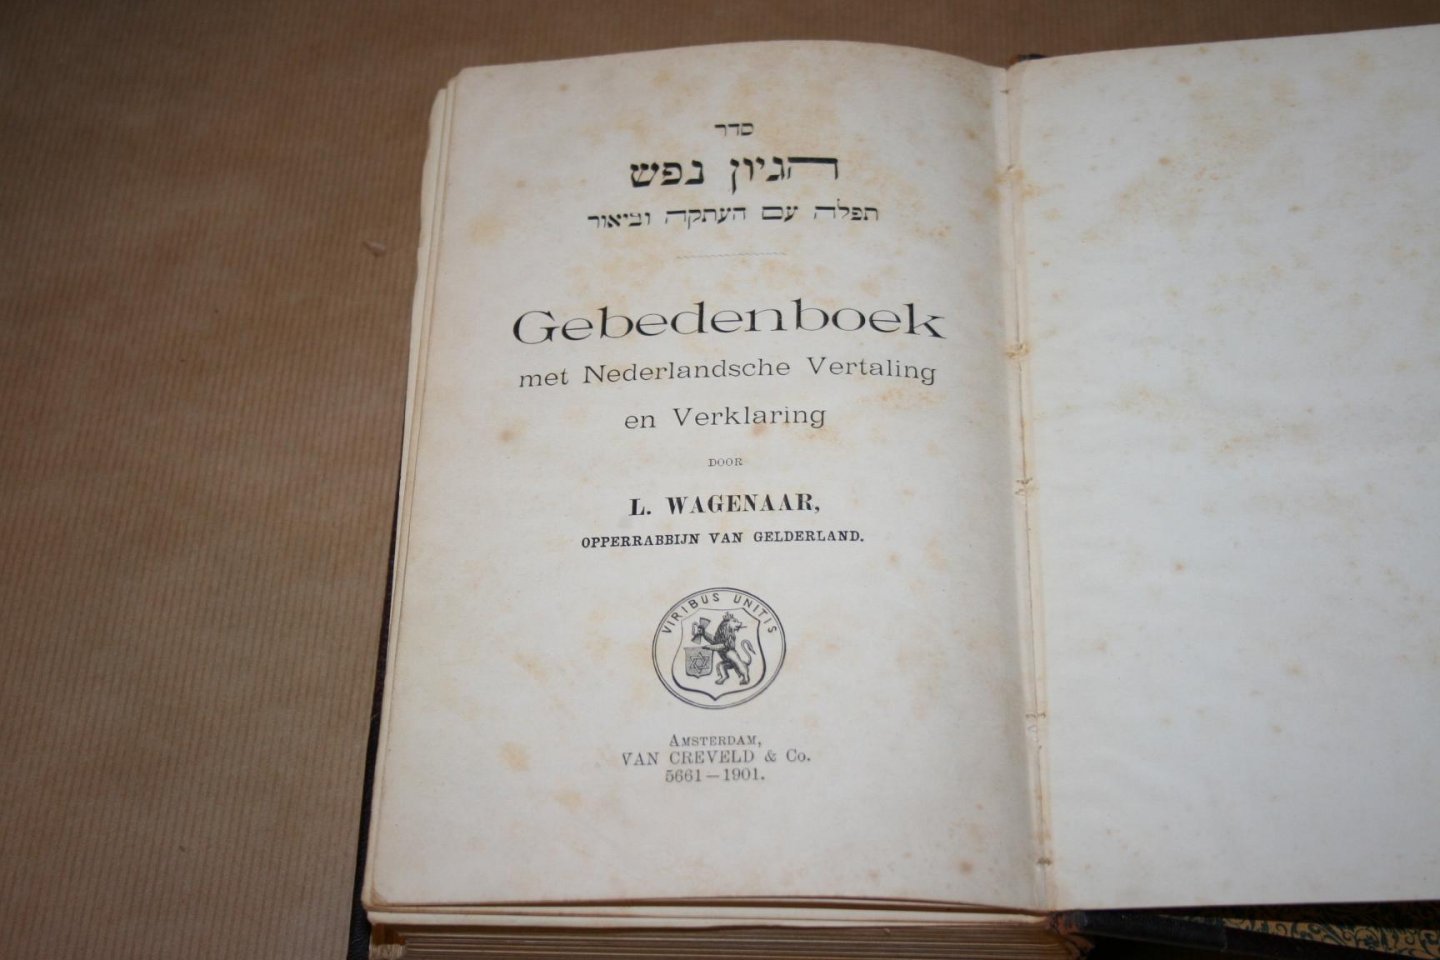 L. Wagenaar (Opperrabijn van Gelderland) - Gebedenboek - met Nederlandsche Vertaling en Verklaring